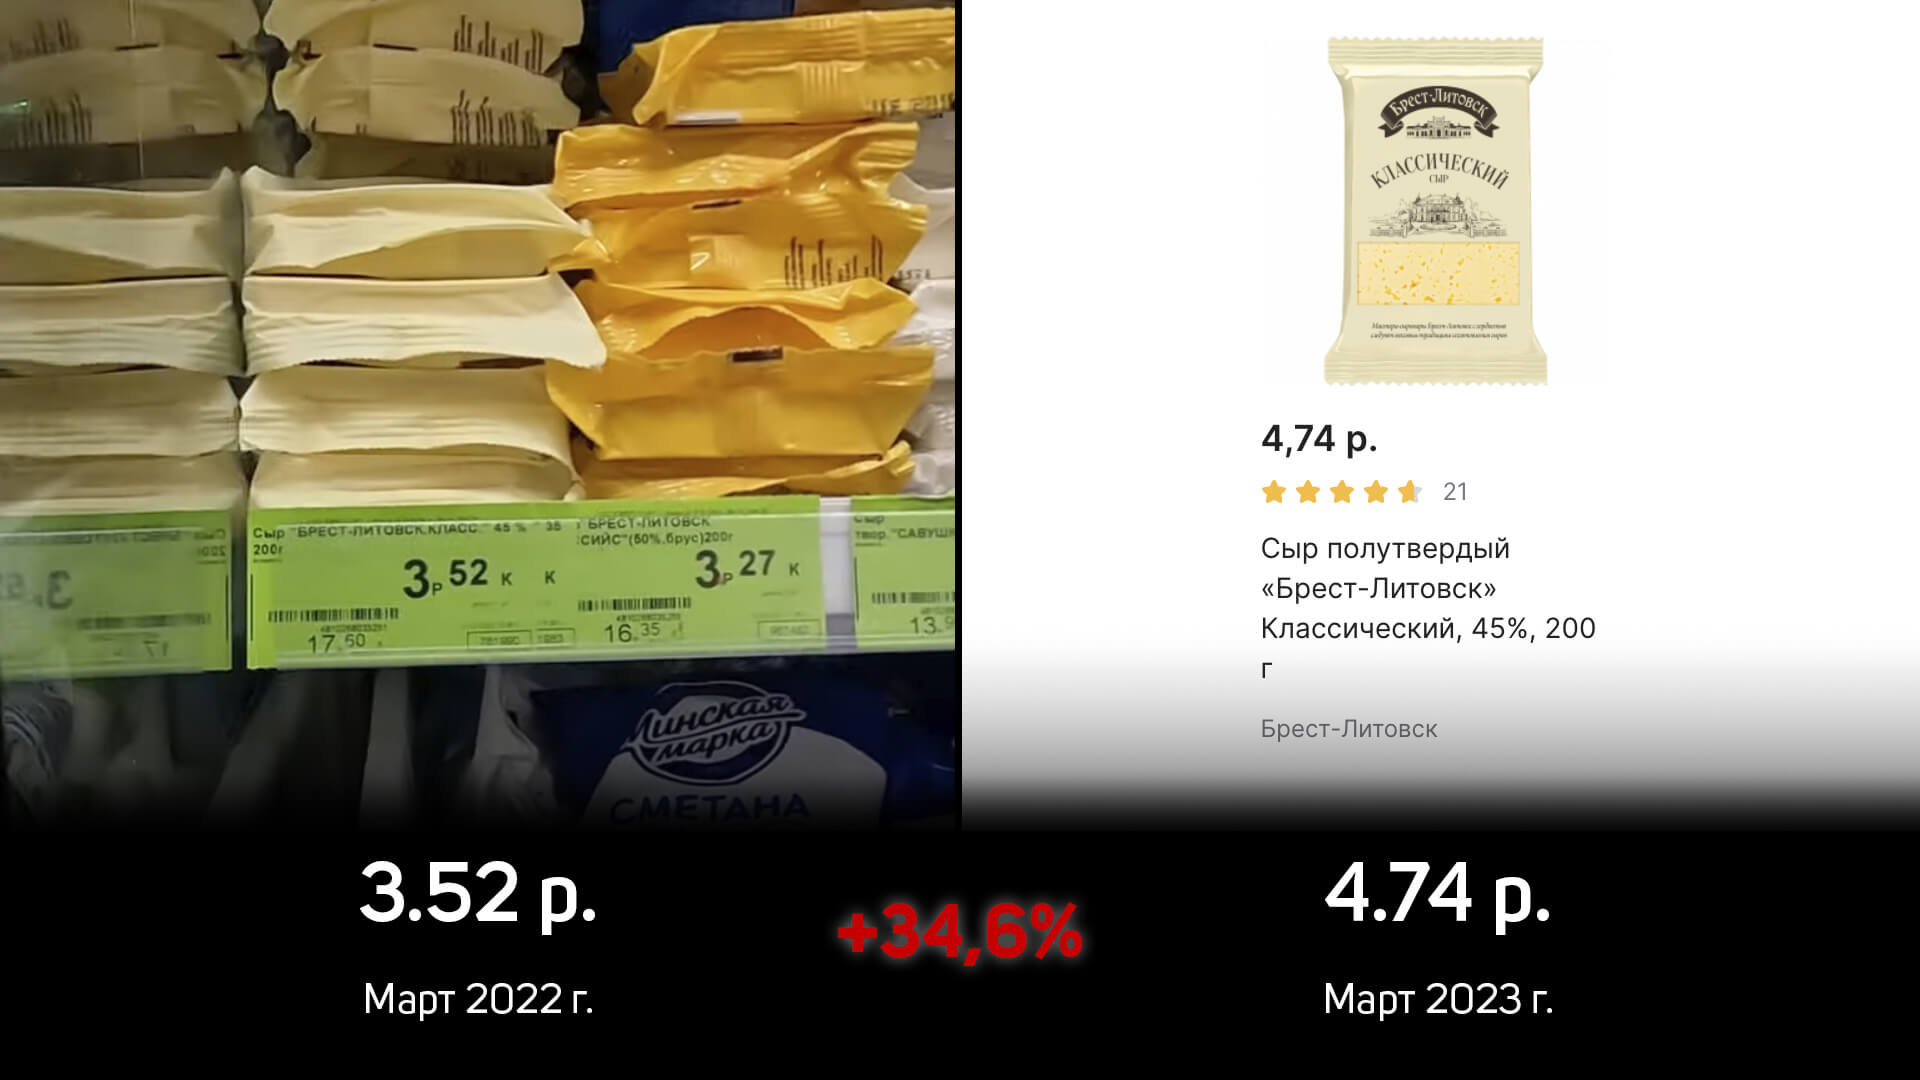 Анализ: Как изменились цены на продукты в Беларуси за 1 год?